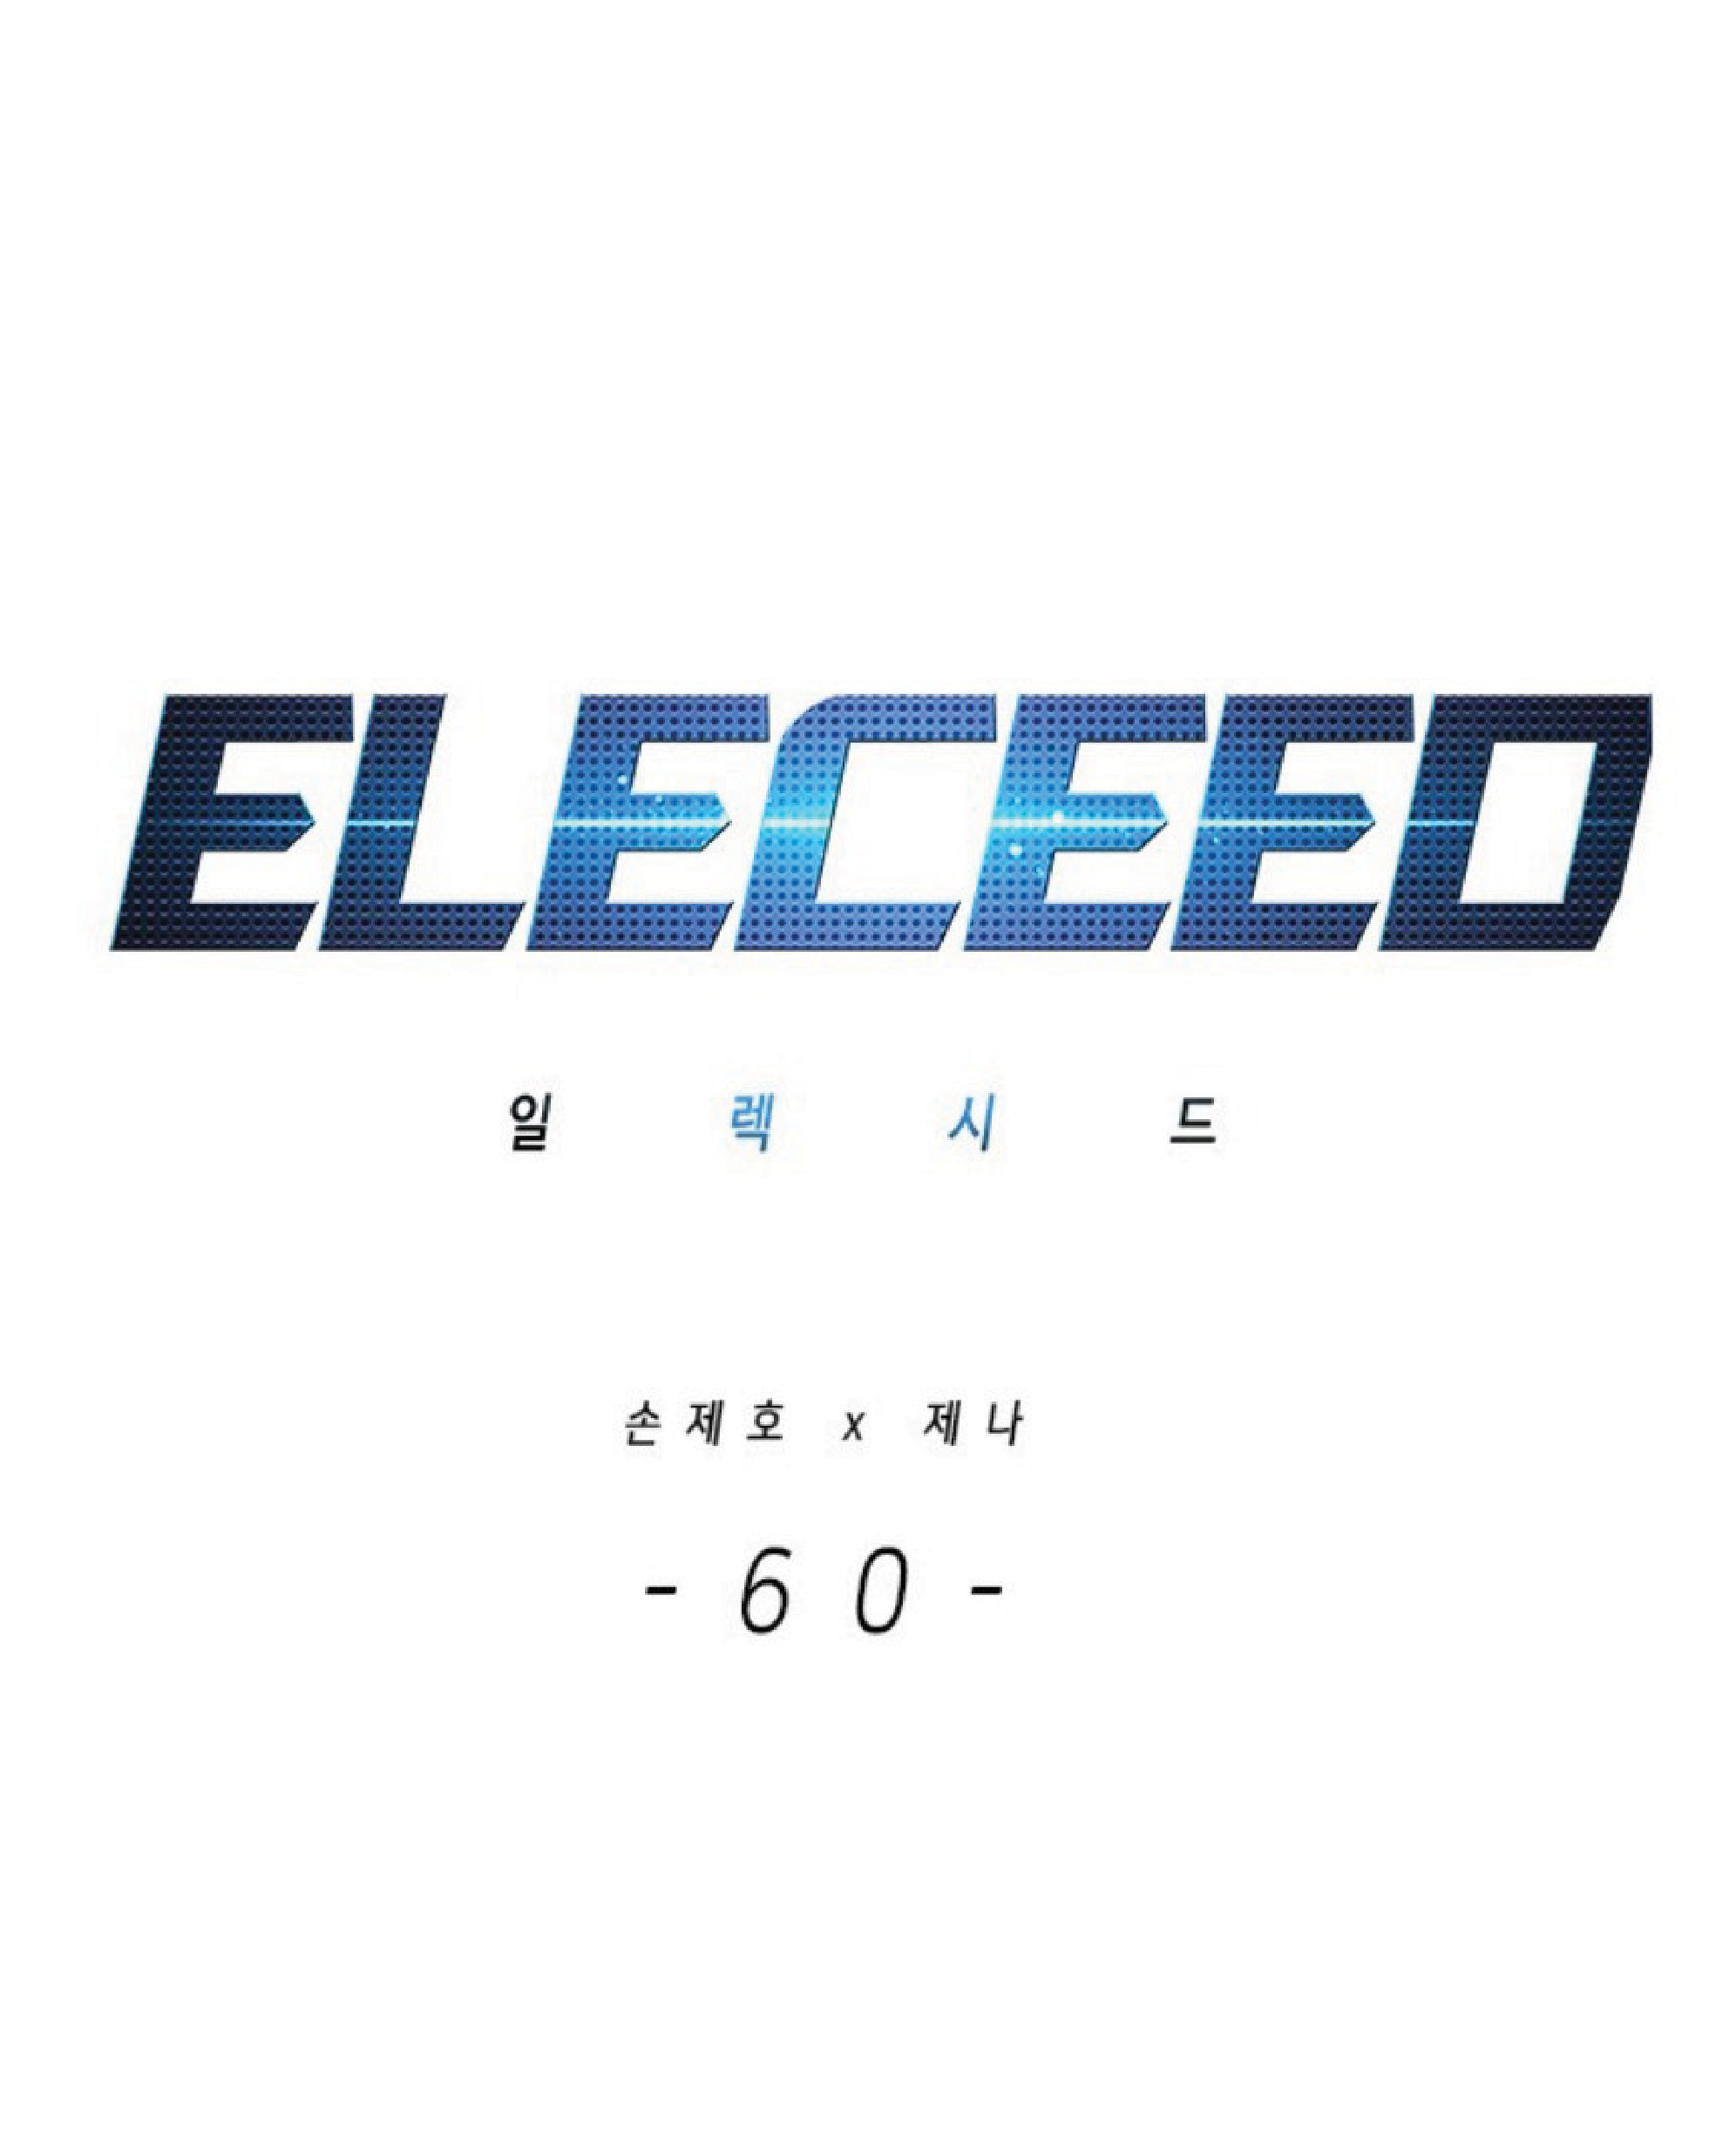 eleceed60 01